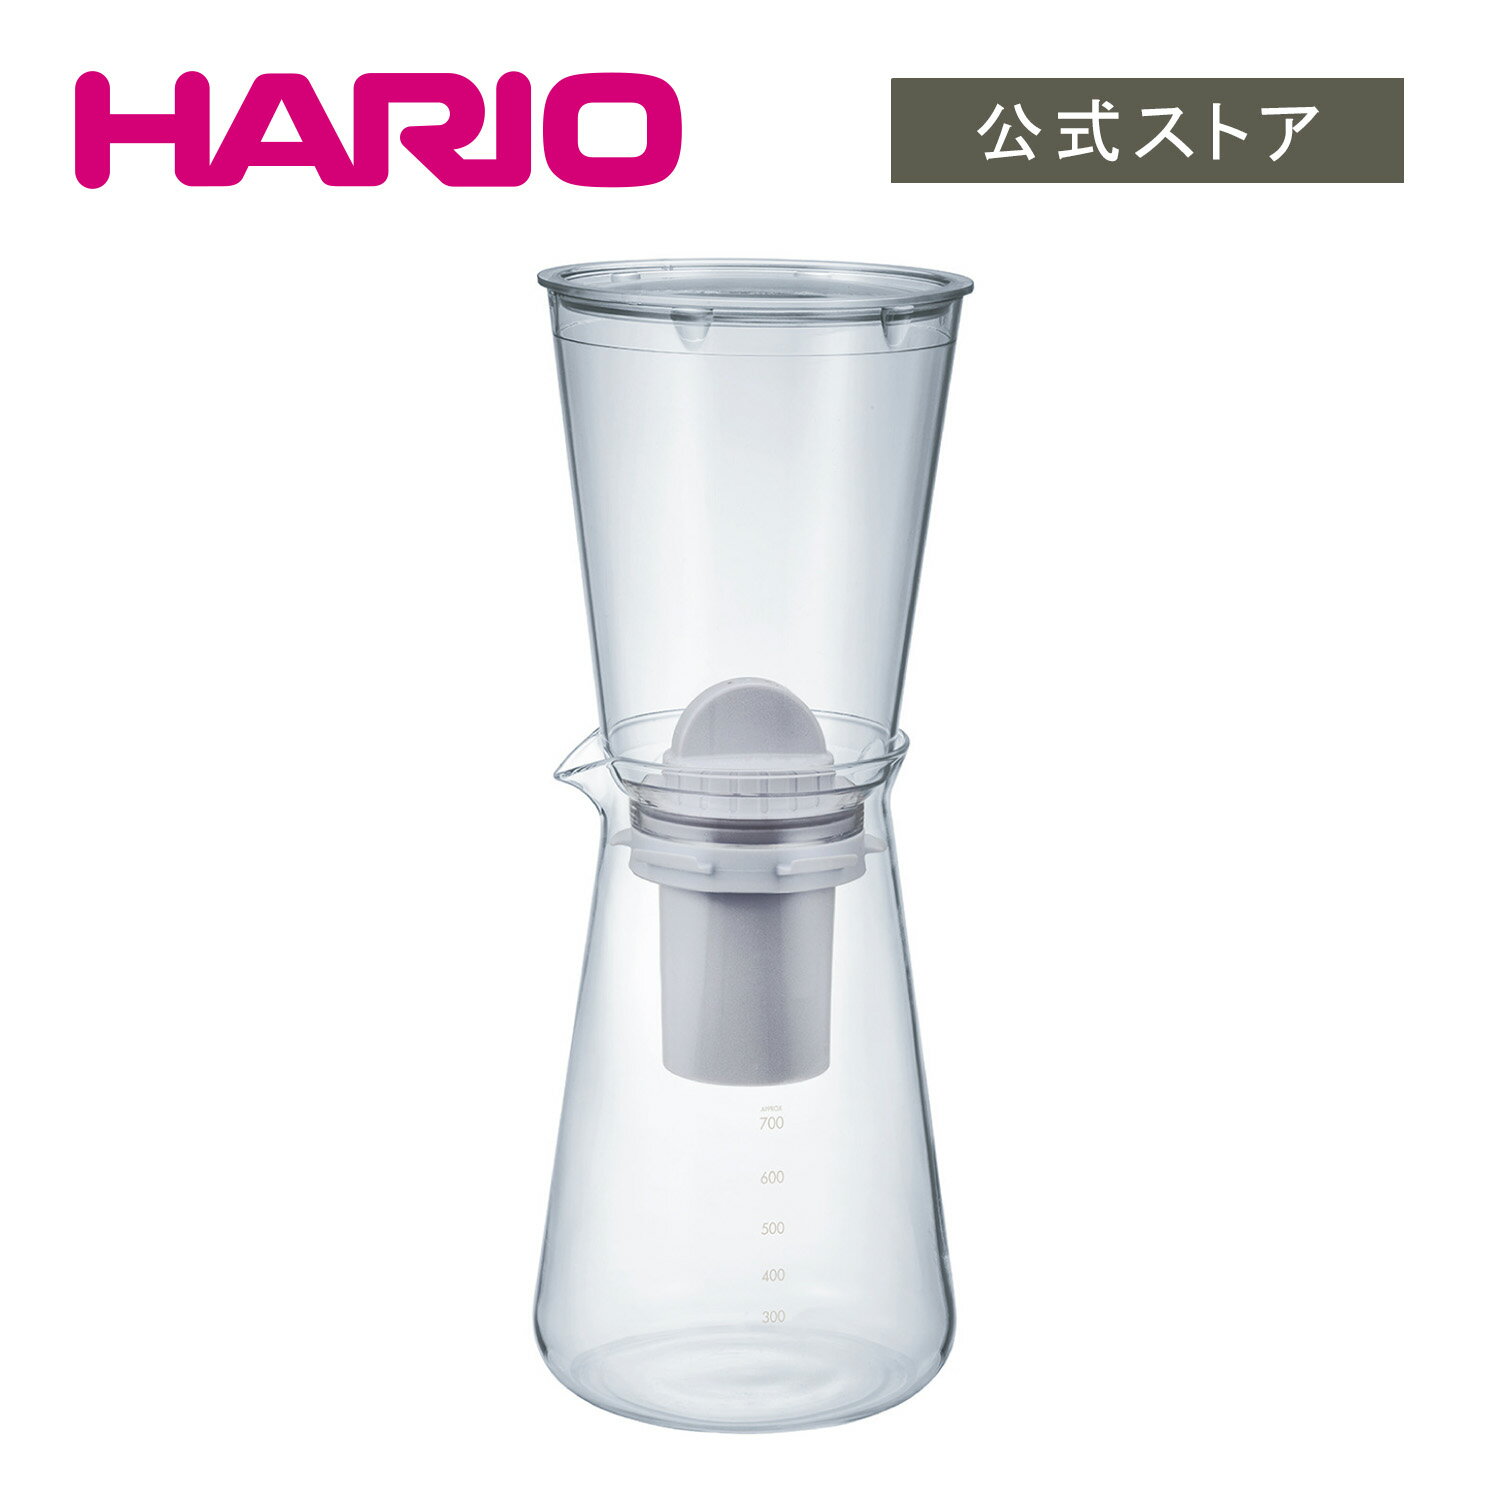 【公式ショップ】HARIO 浄軟水ポット